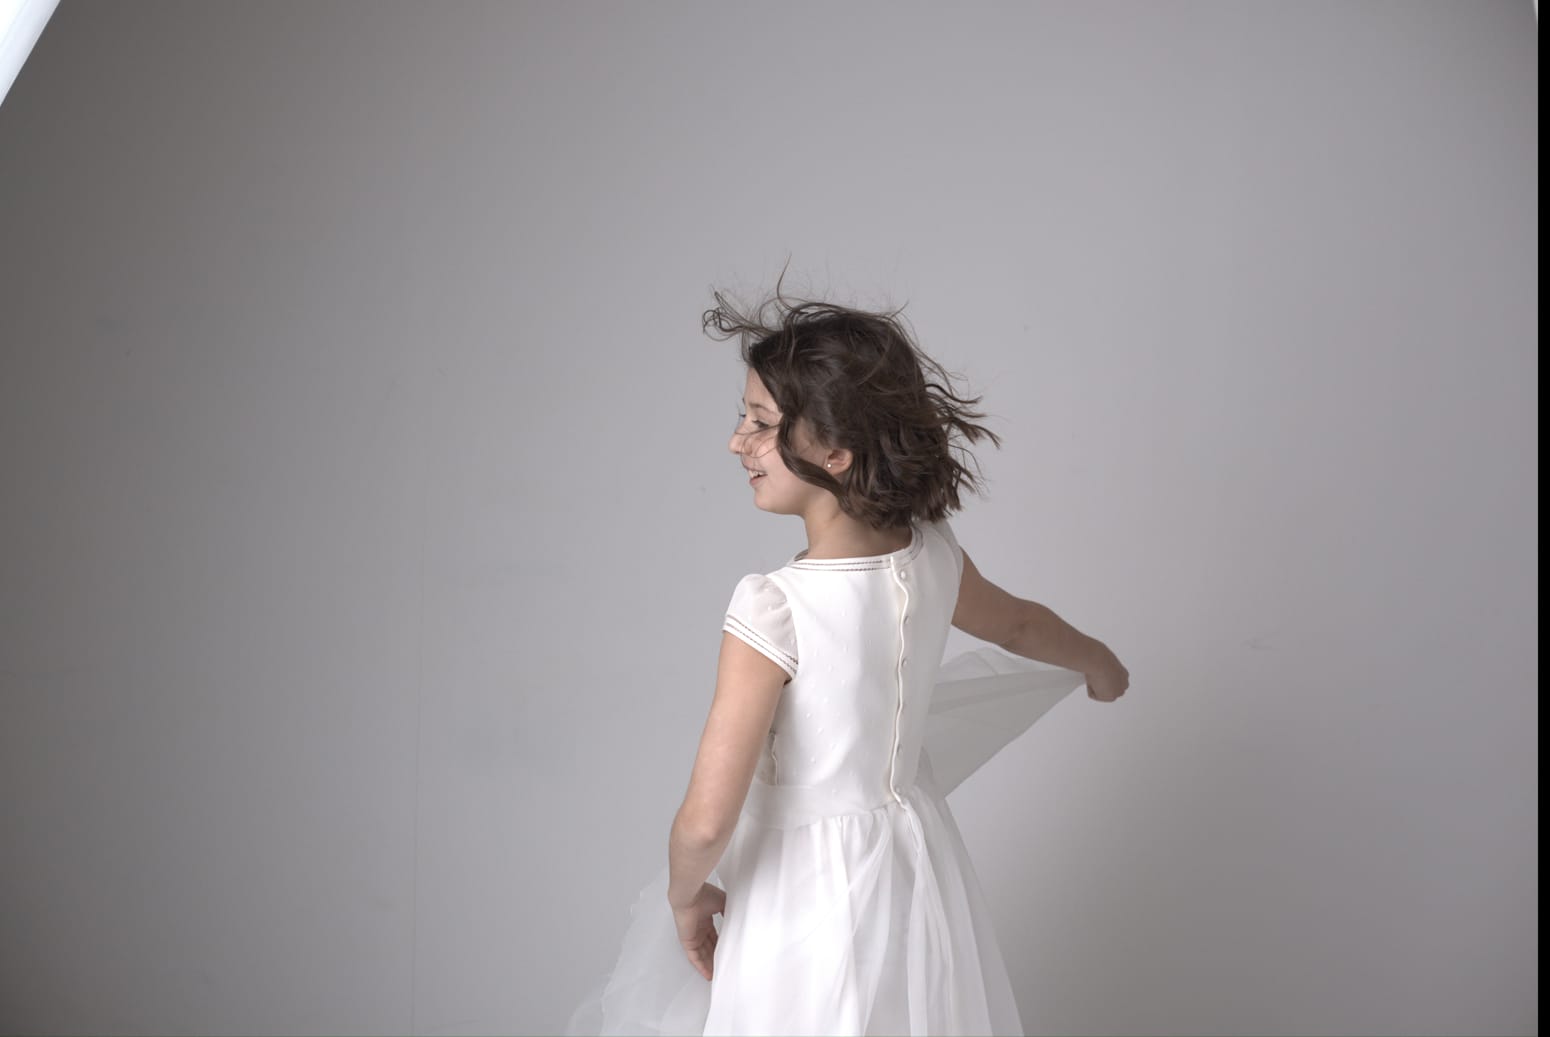 Fotografía de una niña de comunión sujetando su vestido y mirando de espaldas a la cámara